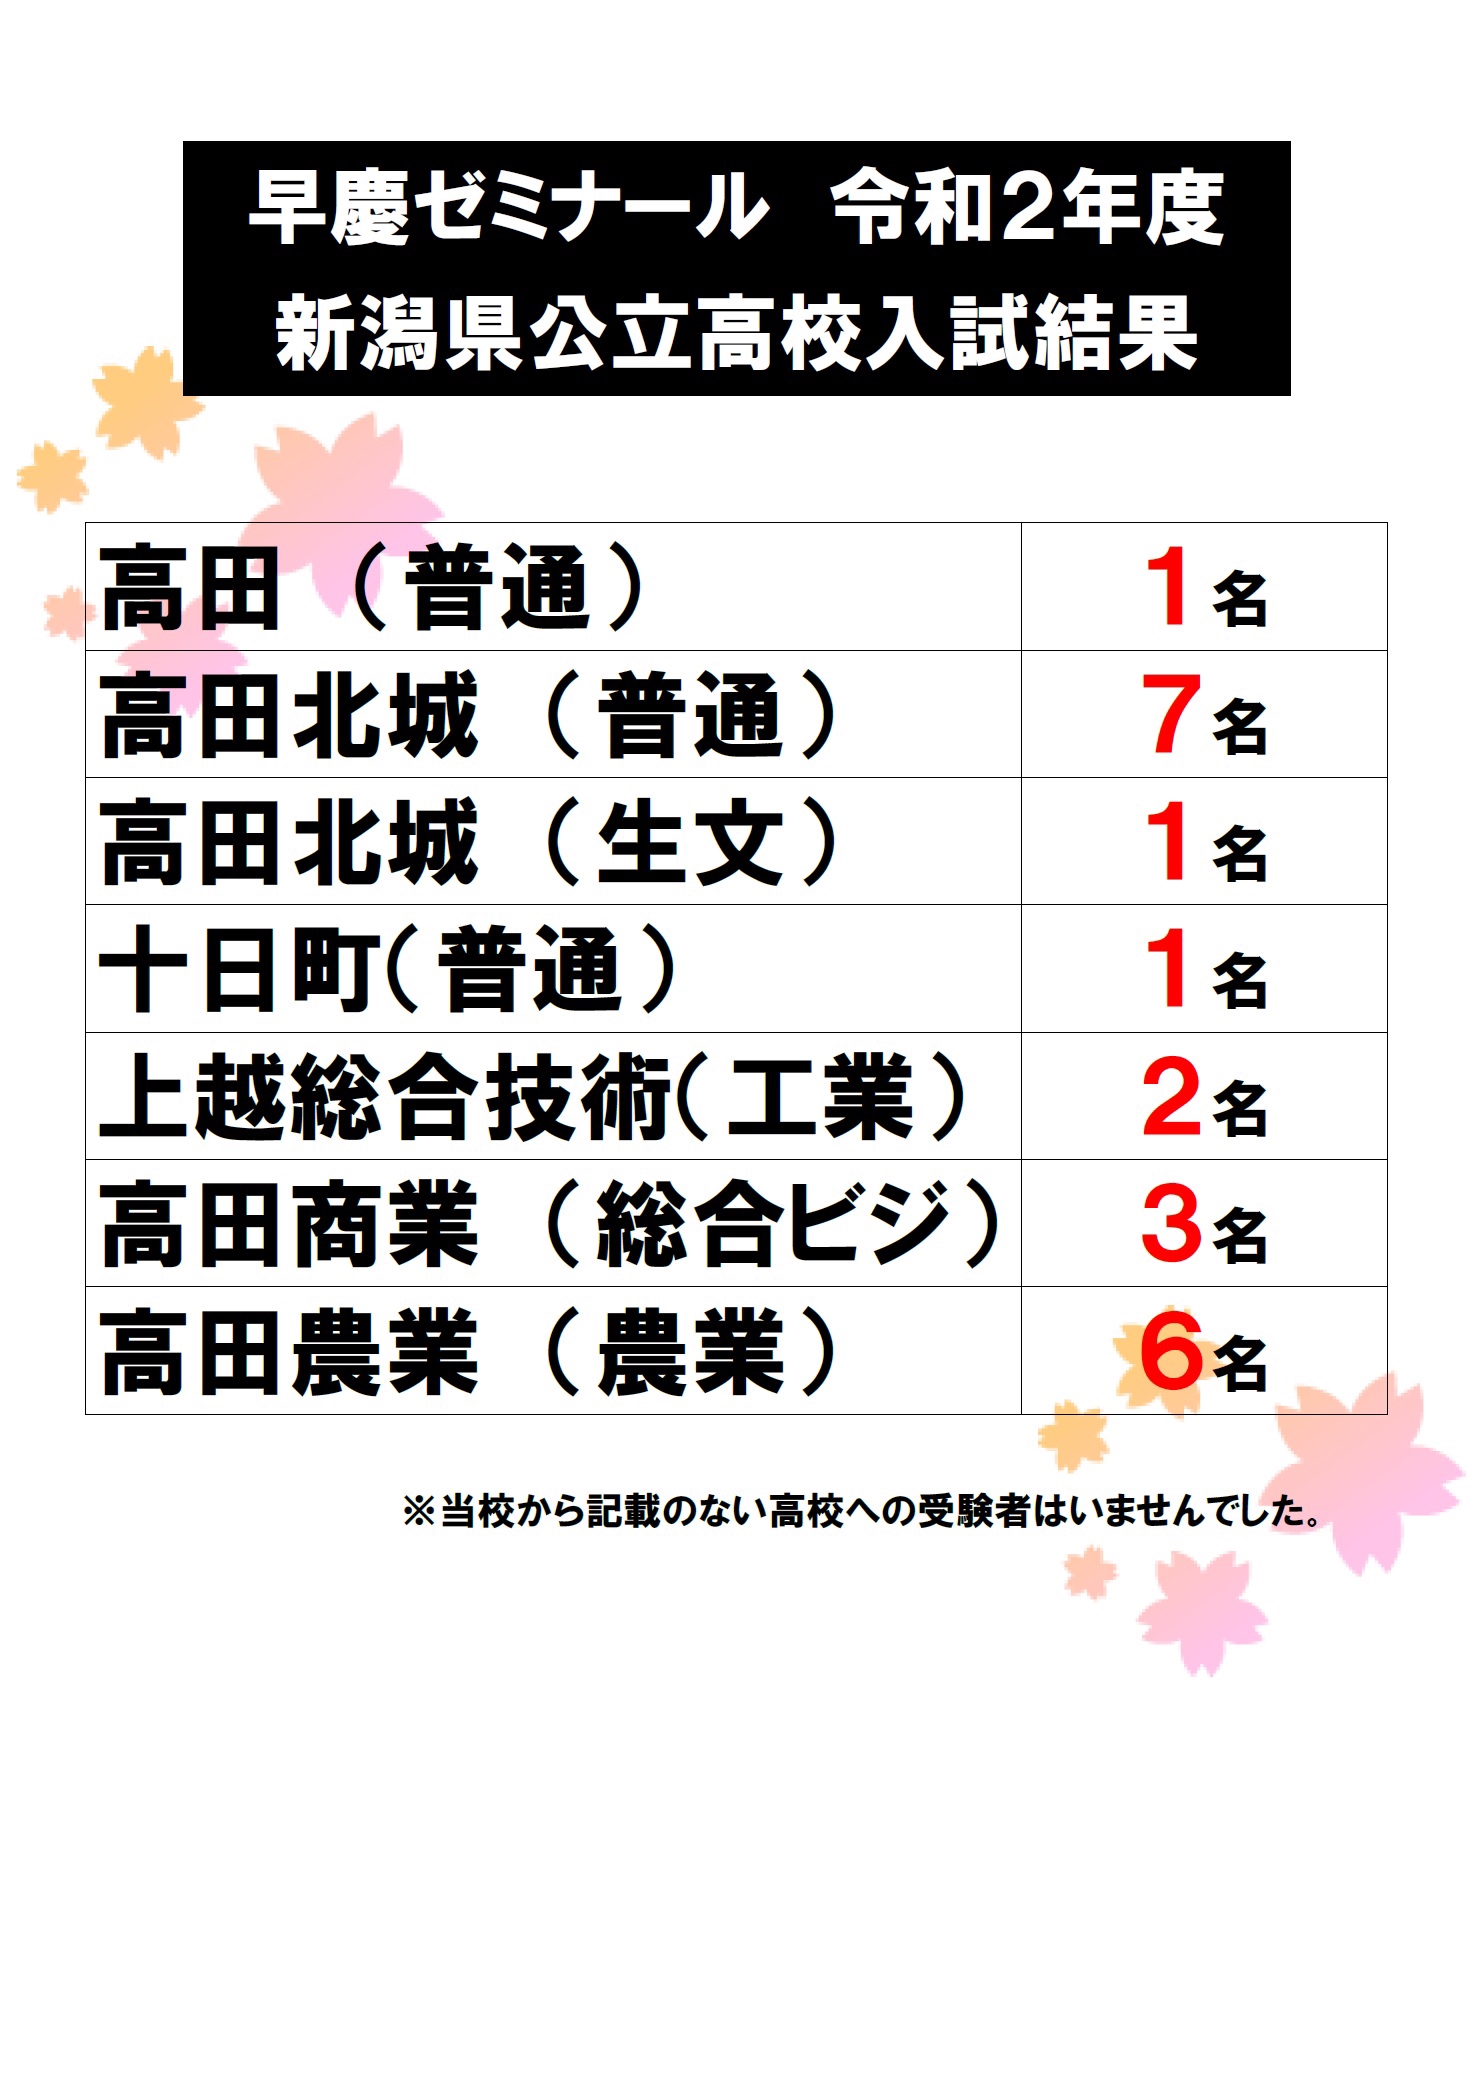 県 入試 新潟 高校 新潟県の高校入試対策はこれで完璧！ 新潟県唯一の高校受験模試でキミの力を確かめよう！